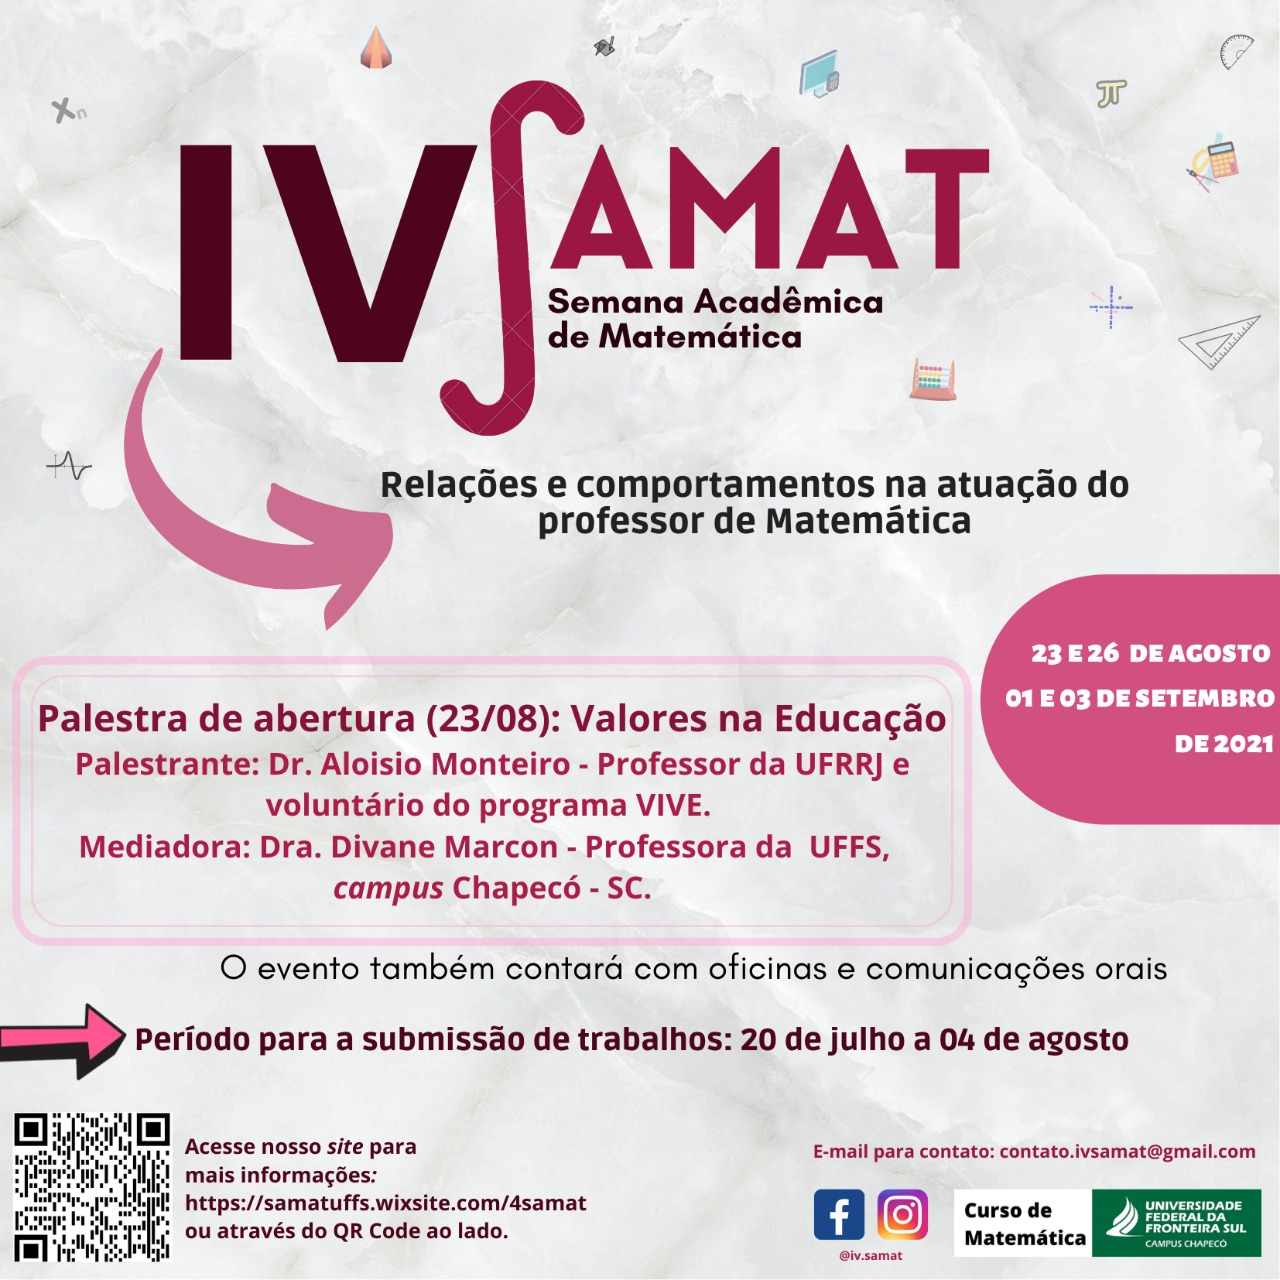 IV SAMAT - Semana Acadêmica de Matemática